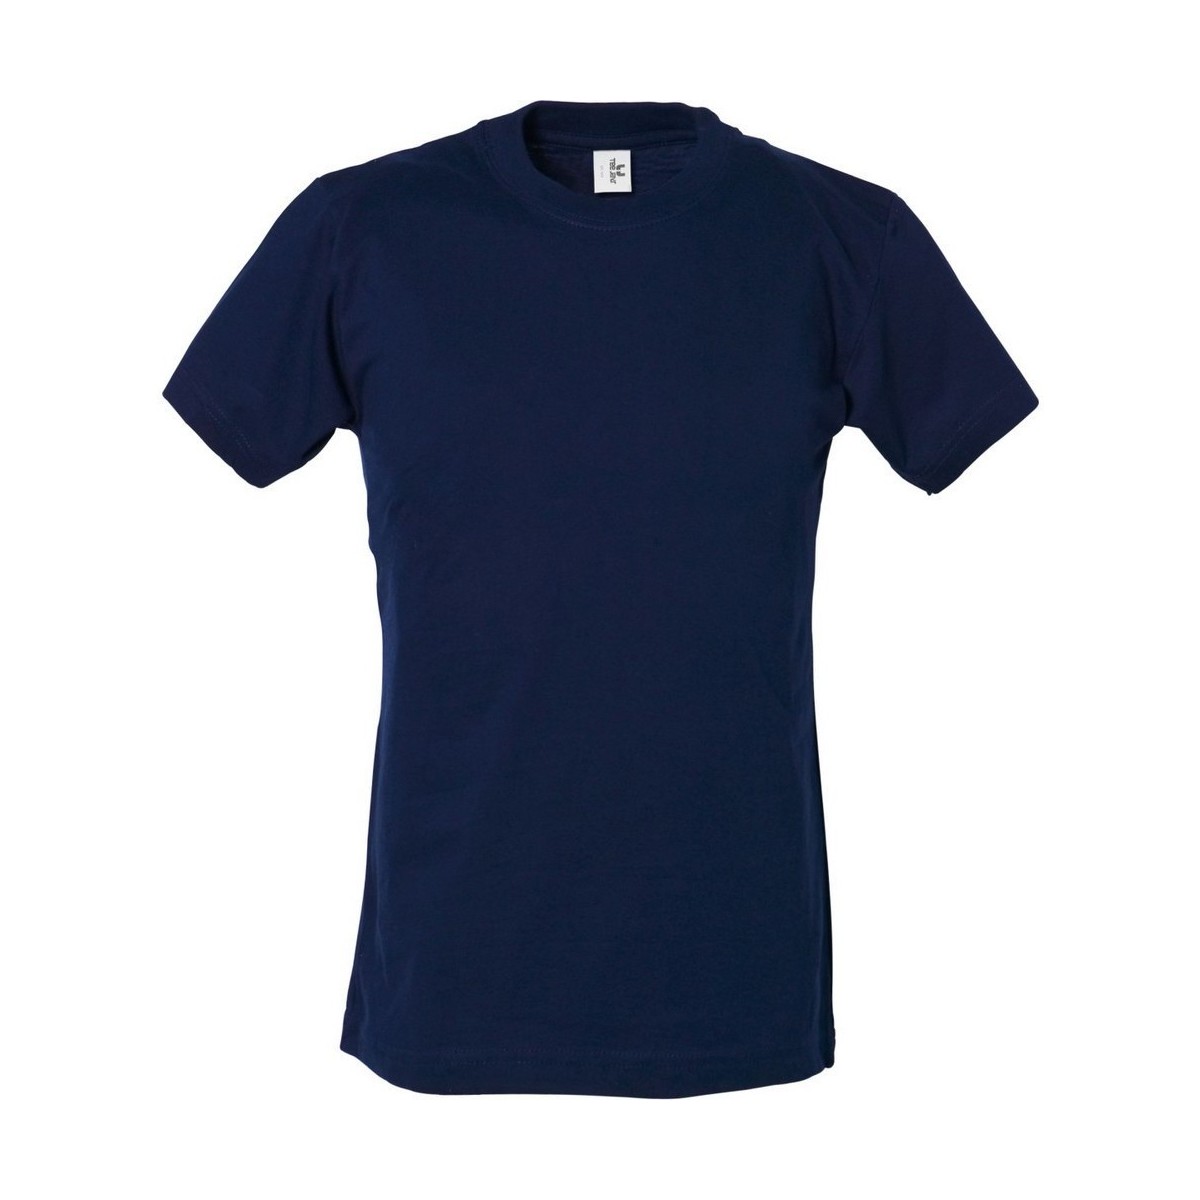 Vêtements Garçon Champion Soft Chest Logo Sweatshirt Power Bleu